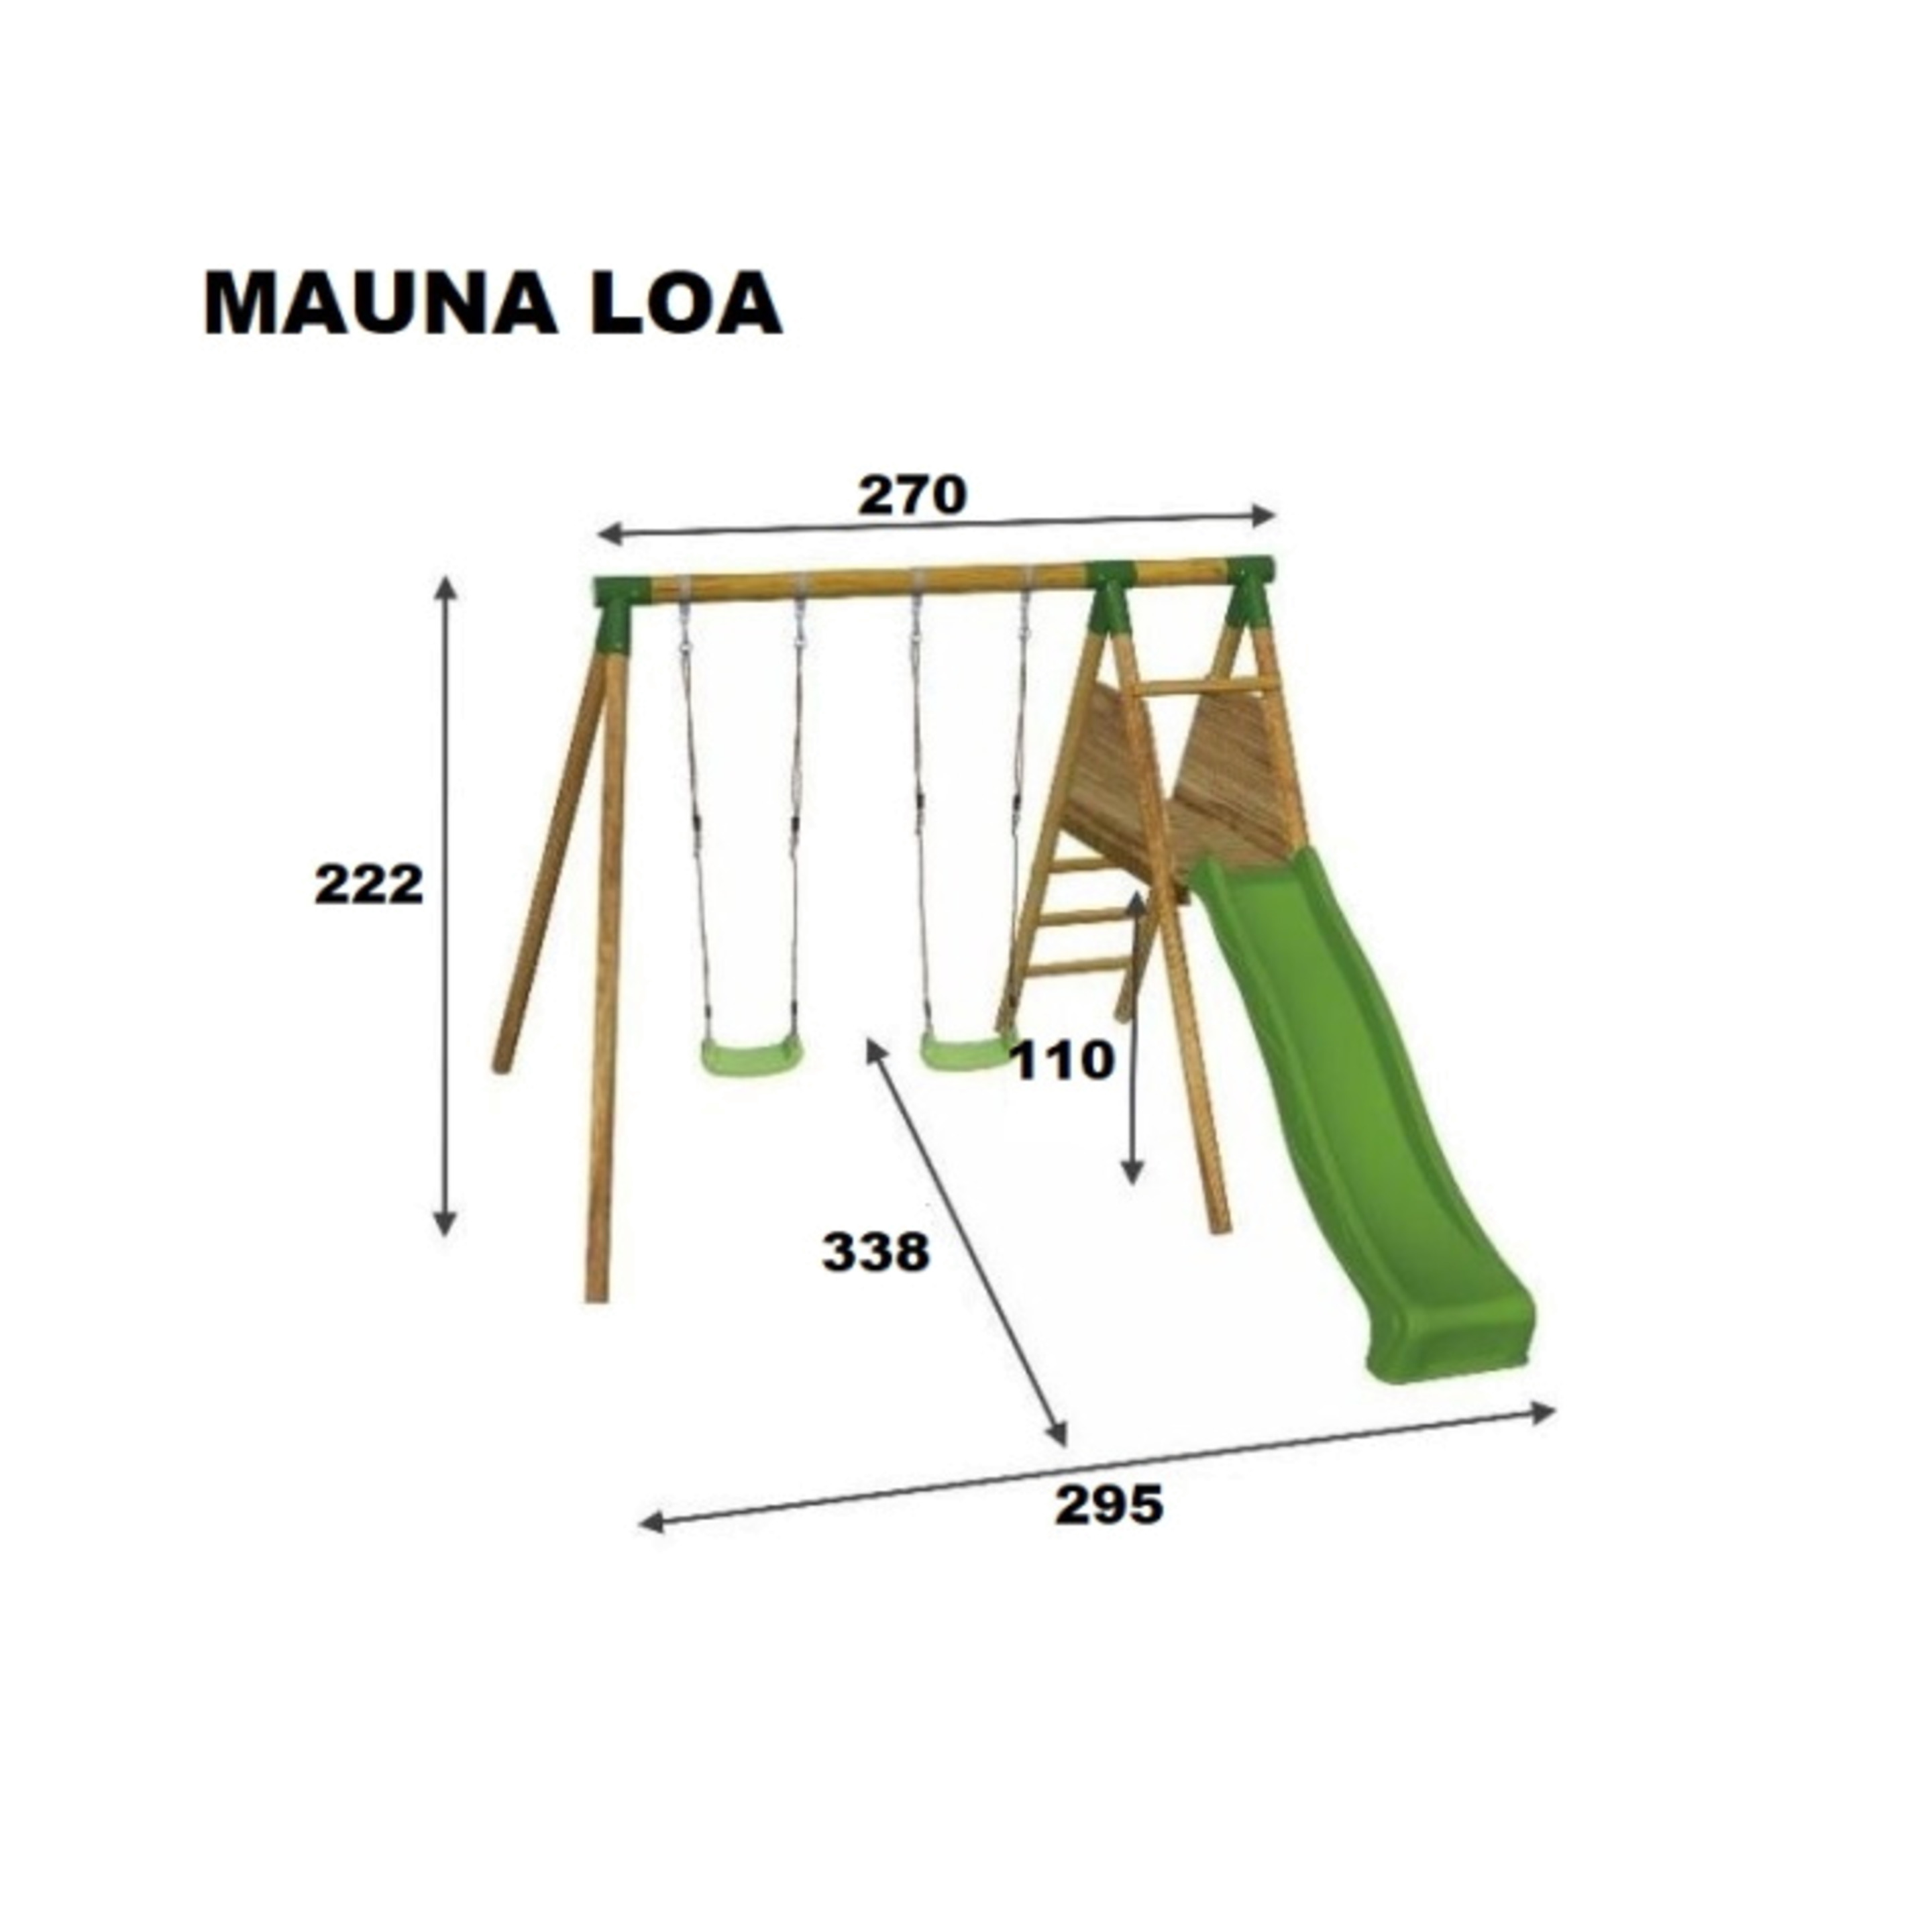 Parque Infantil Mauna Loa Con Cara A Cara - Madera - Parque Infantil Mauna Loa Con Cara  MKP